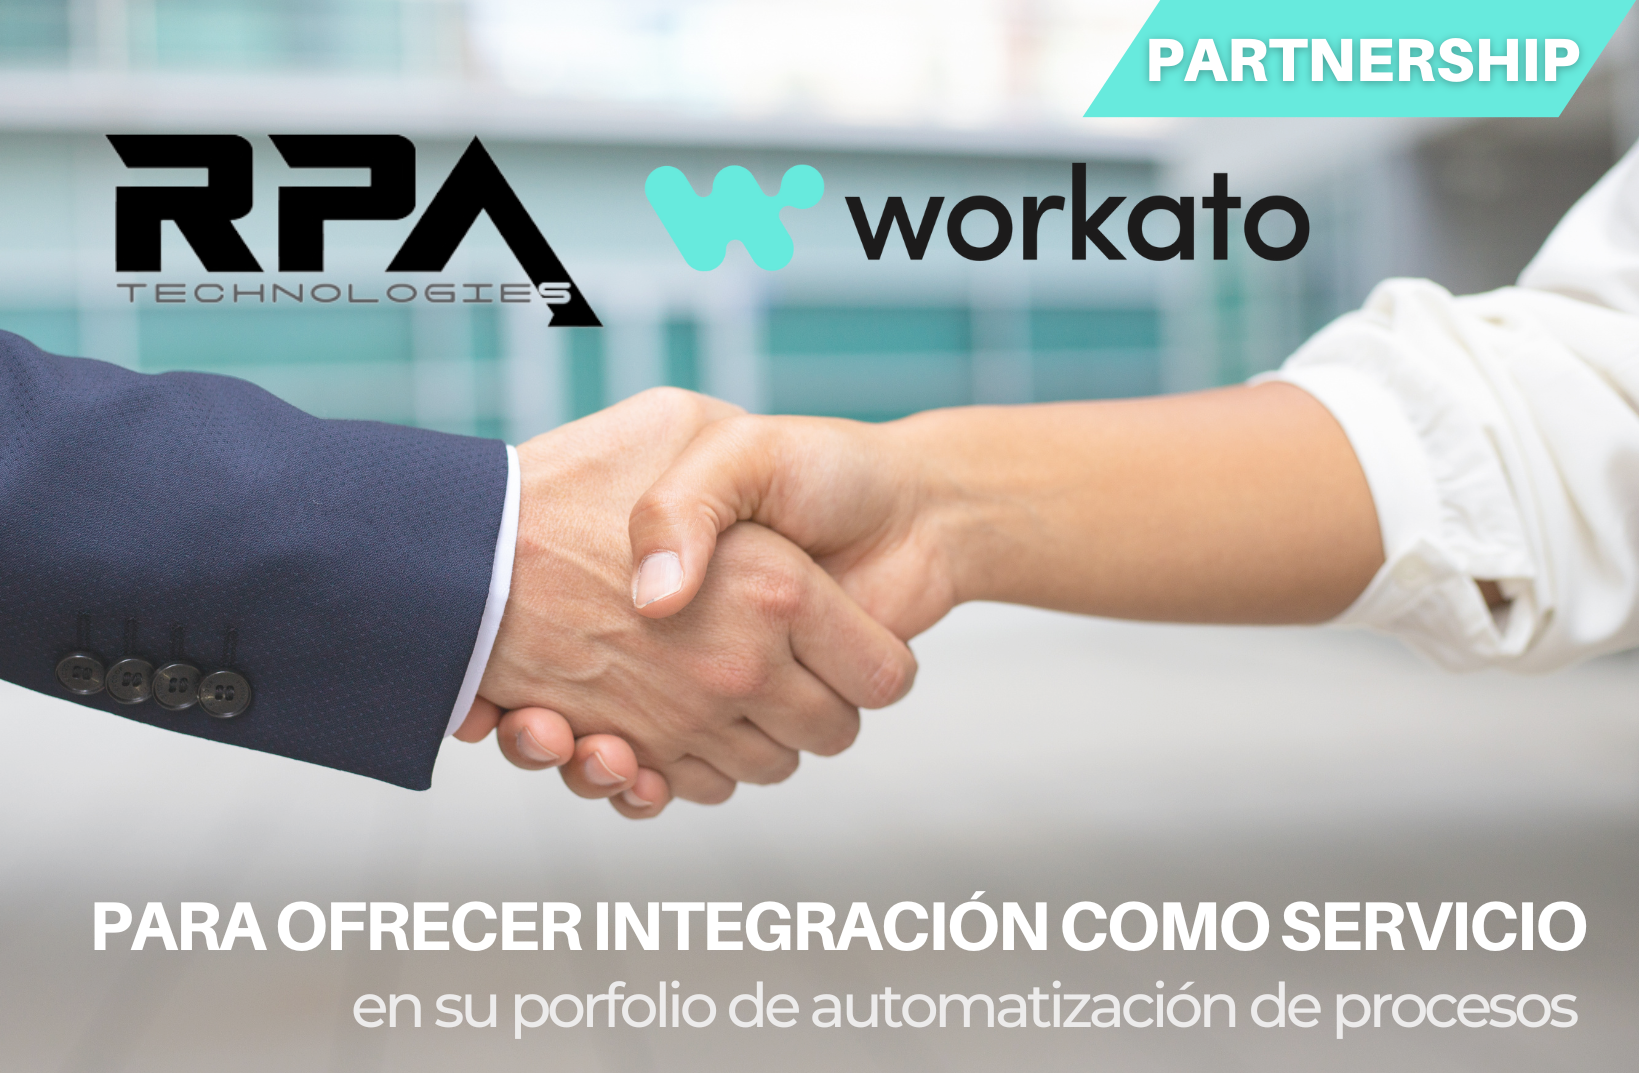 RPA Technologies firma un acuerdo estratégico con Workato